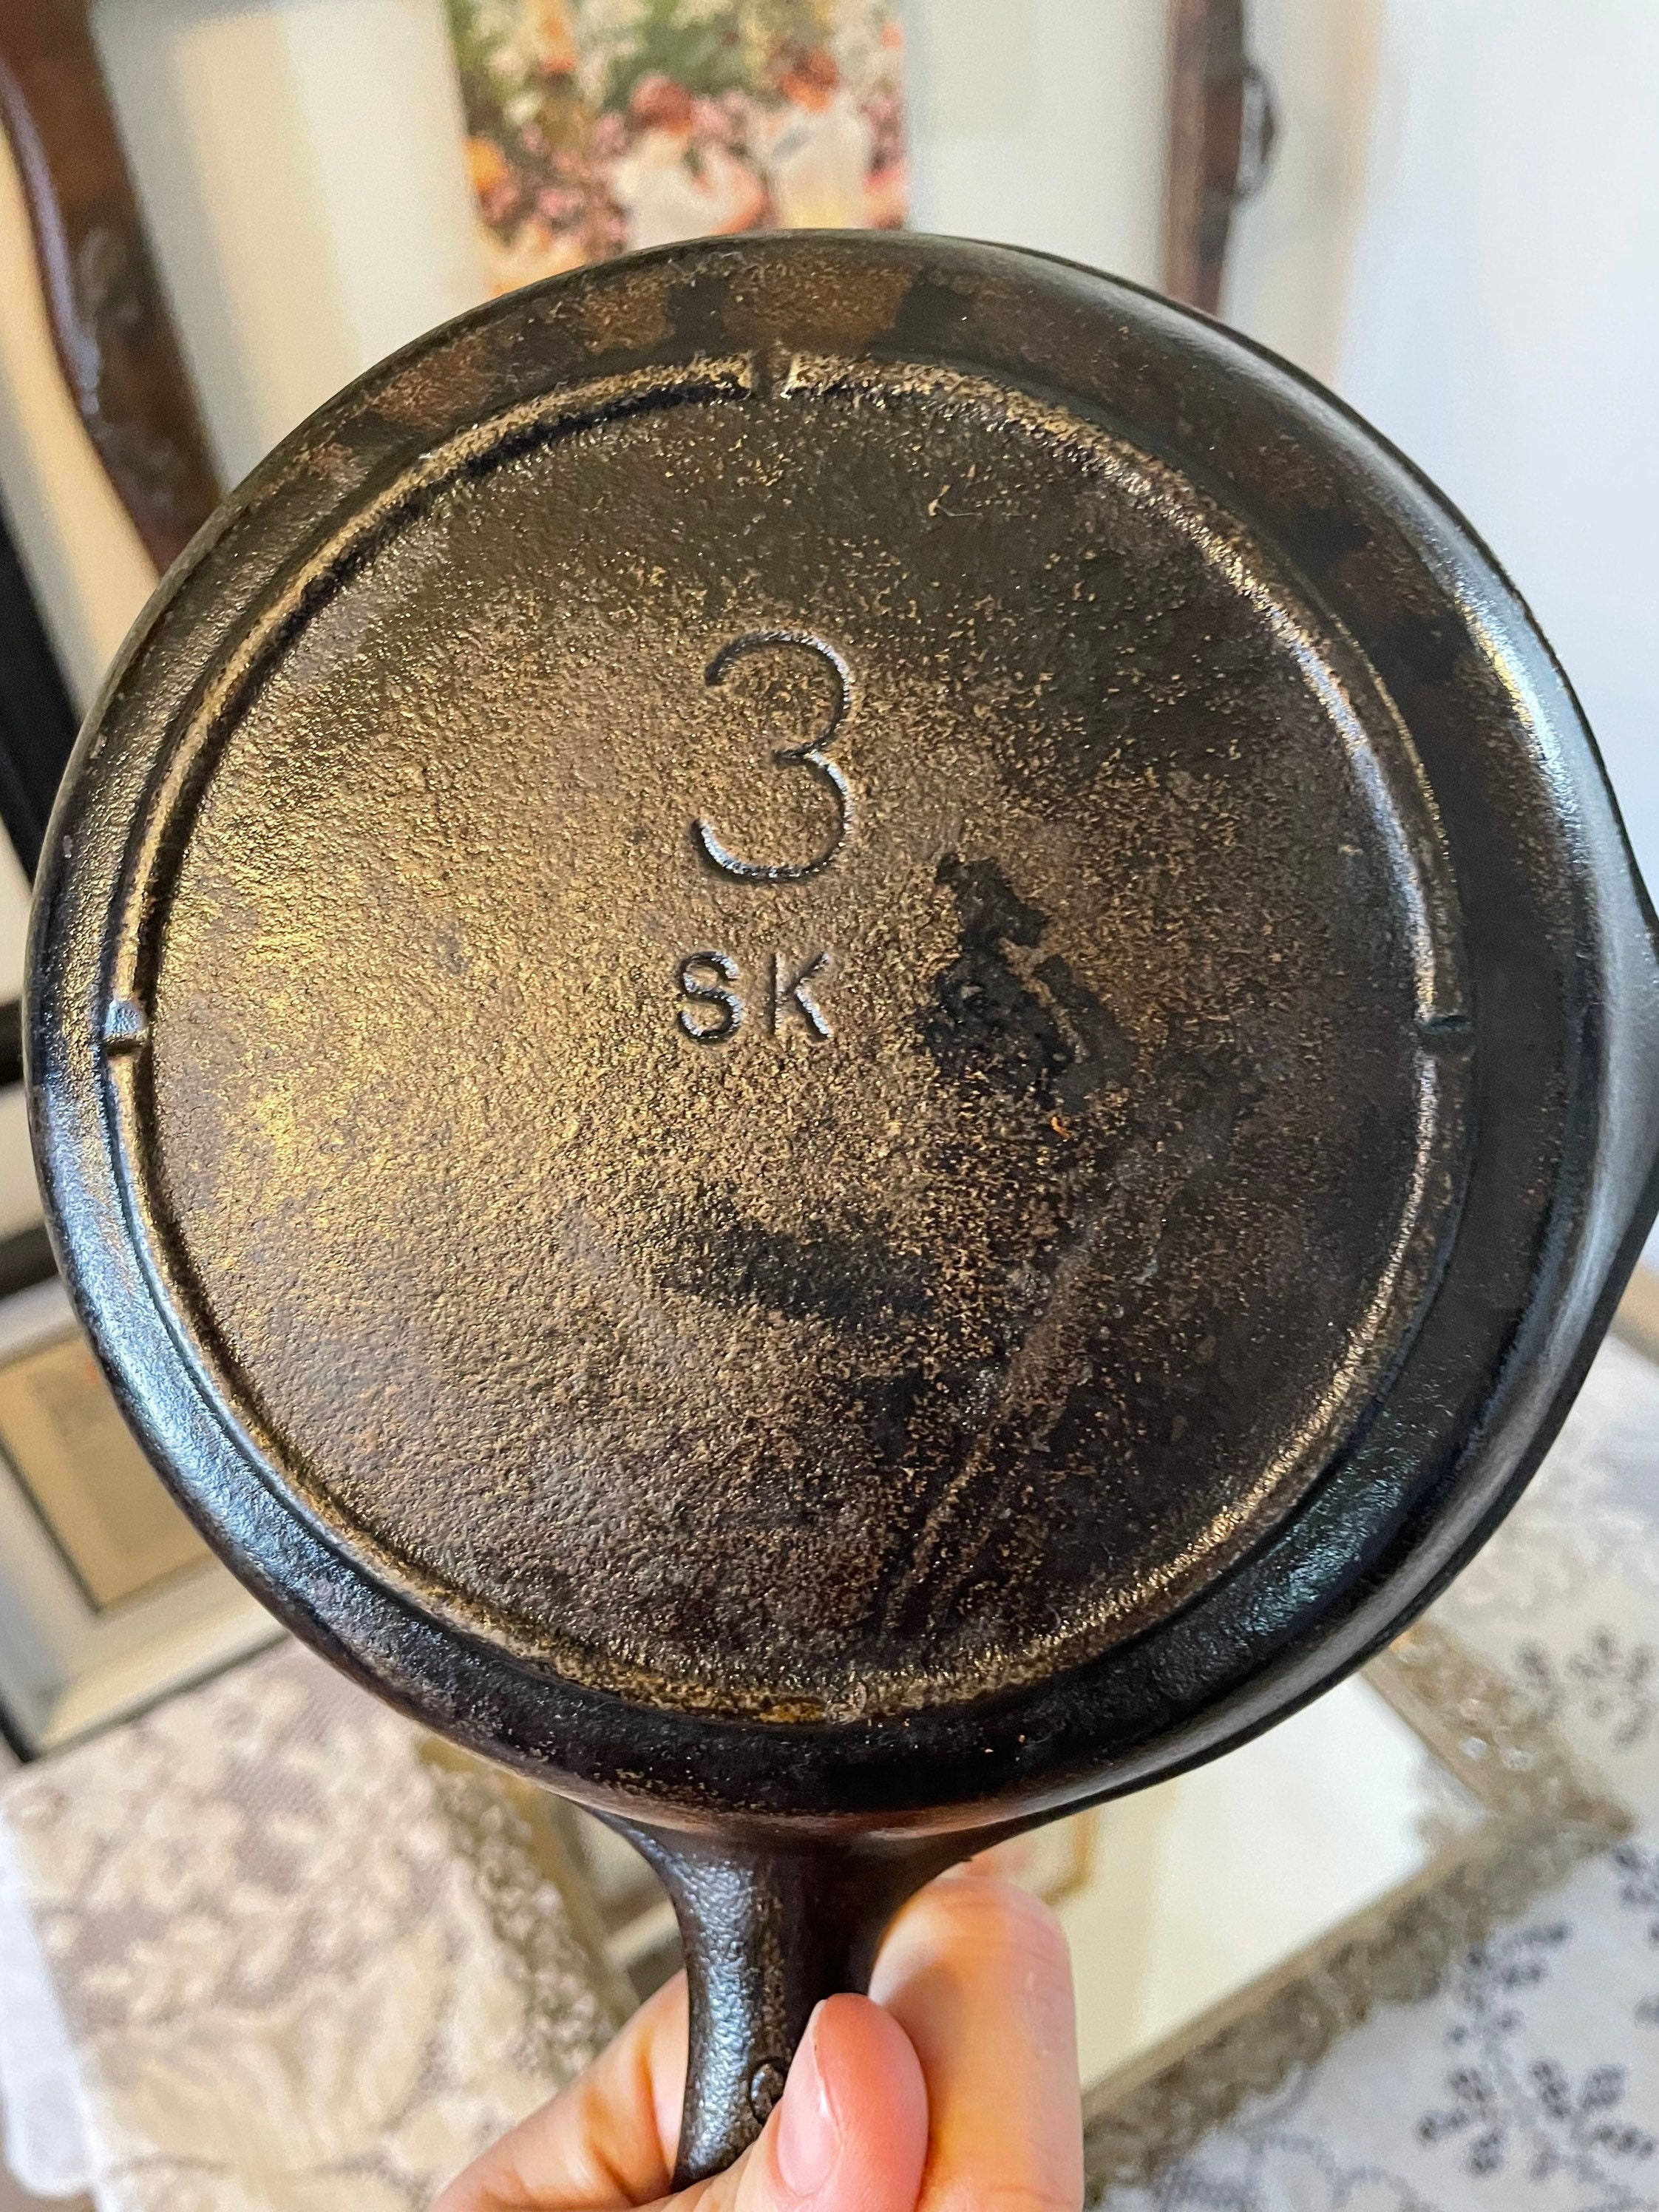 Vintage Lodge Cast Iron Skillet 8 SK Double Spout Fry Pan 